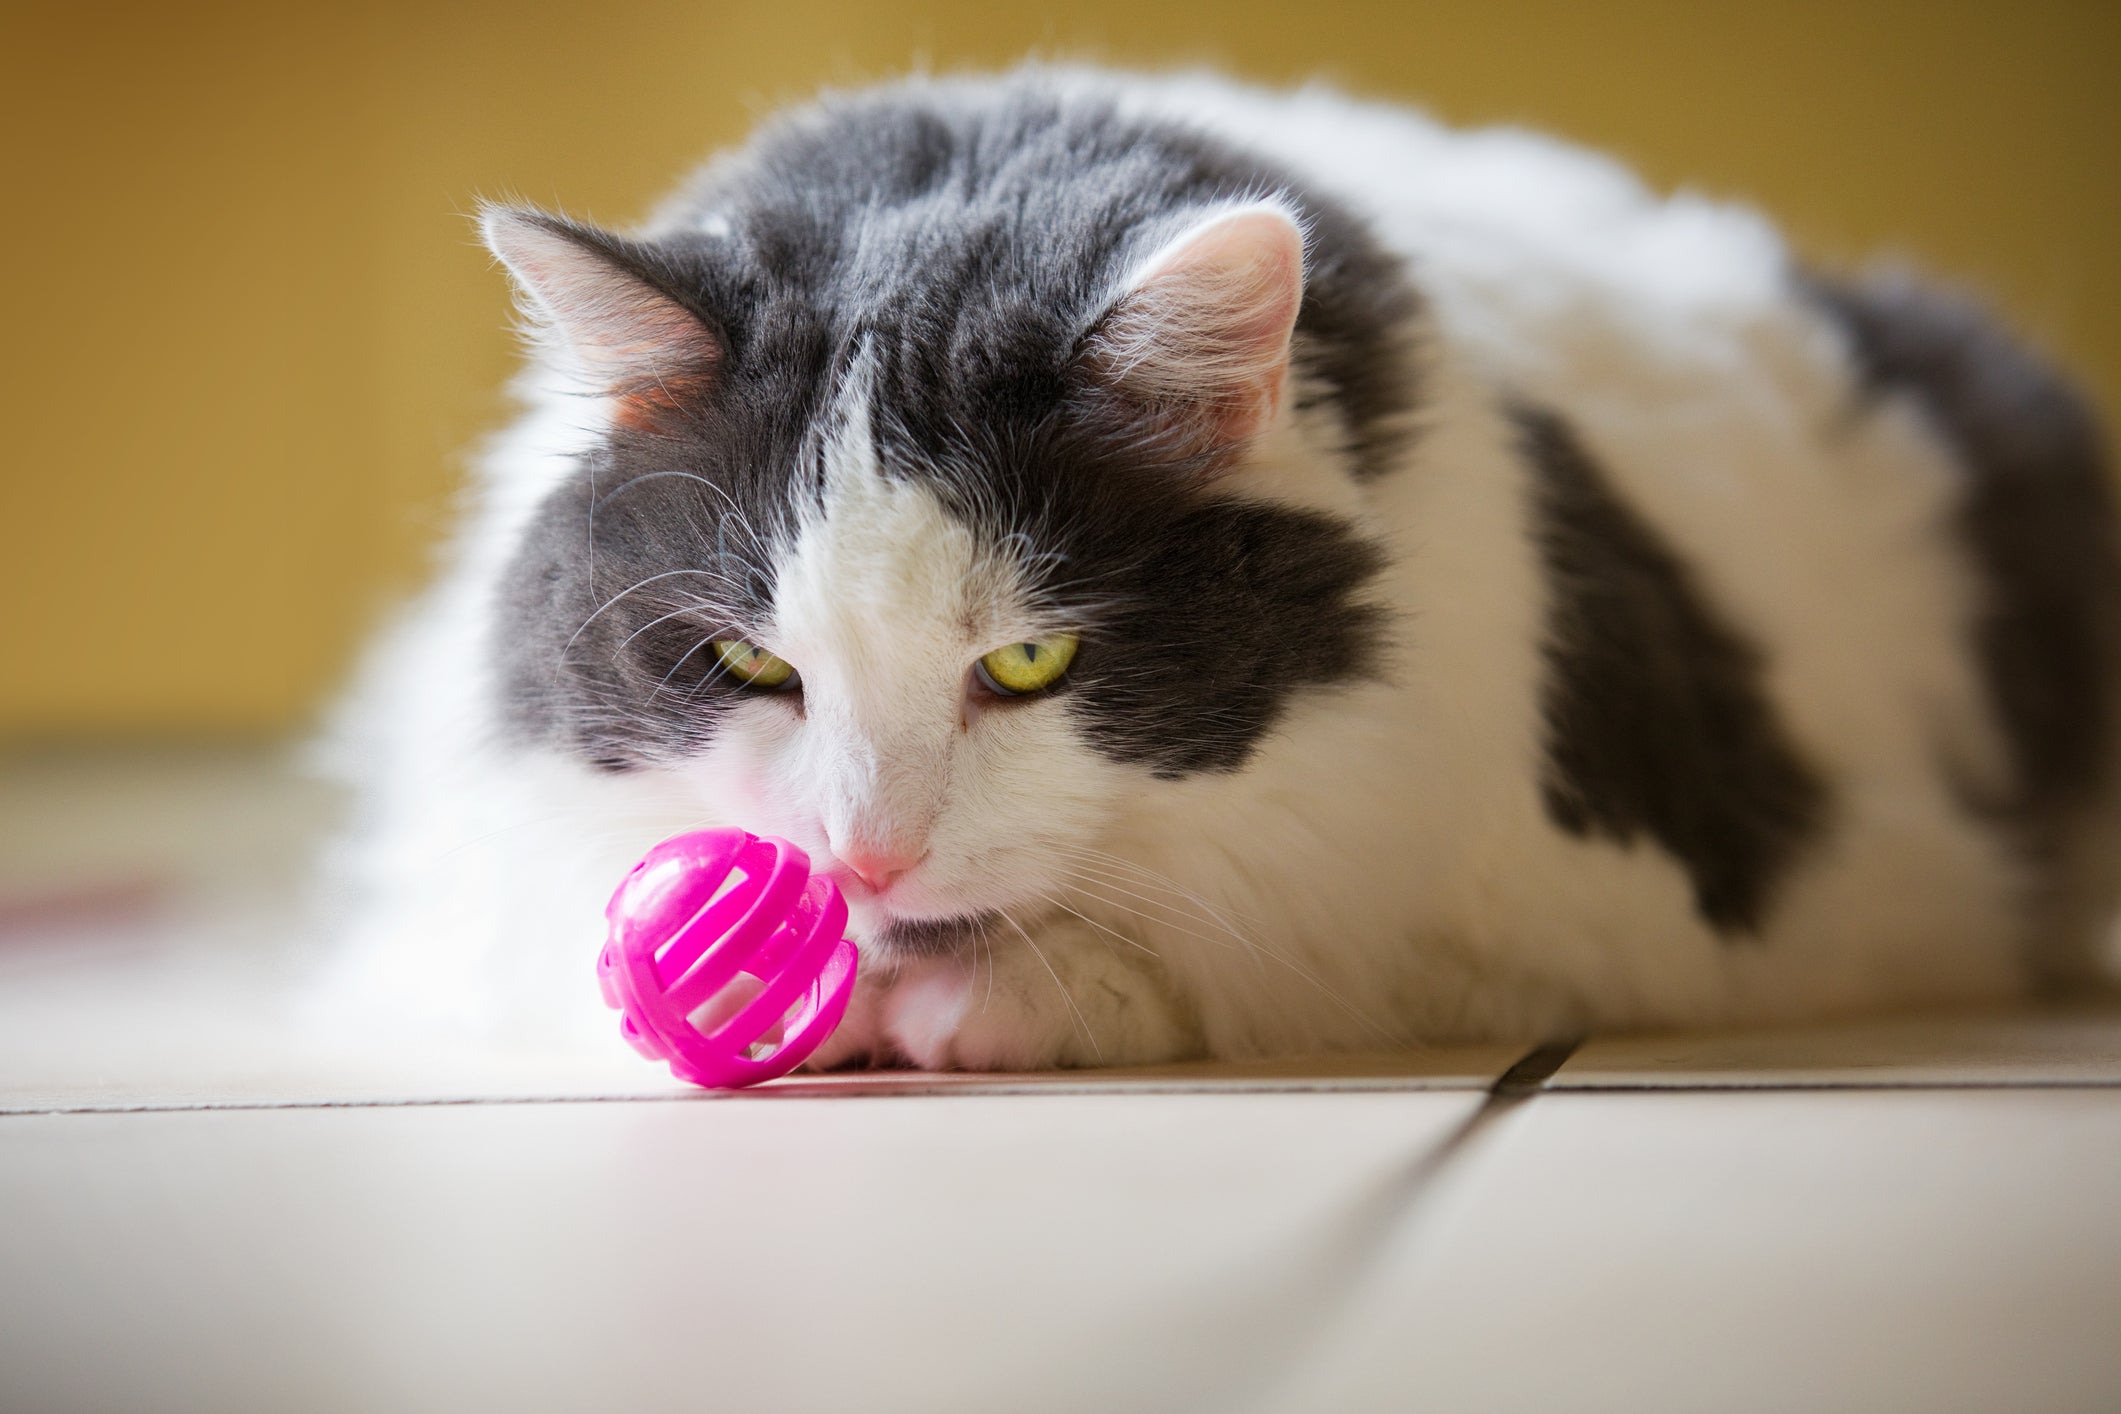 Gato branco e cinza olhando para bolinha de brinquedo rosa